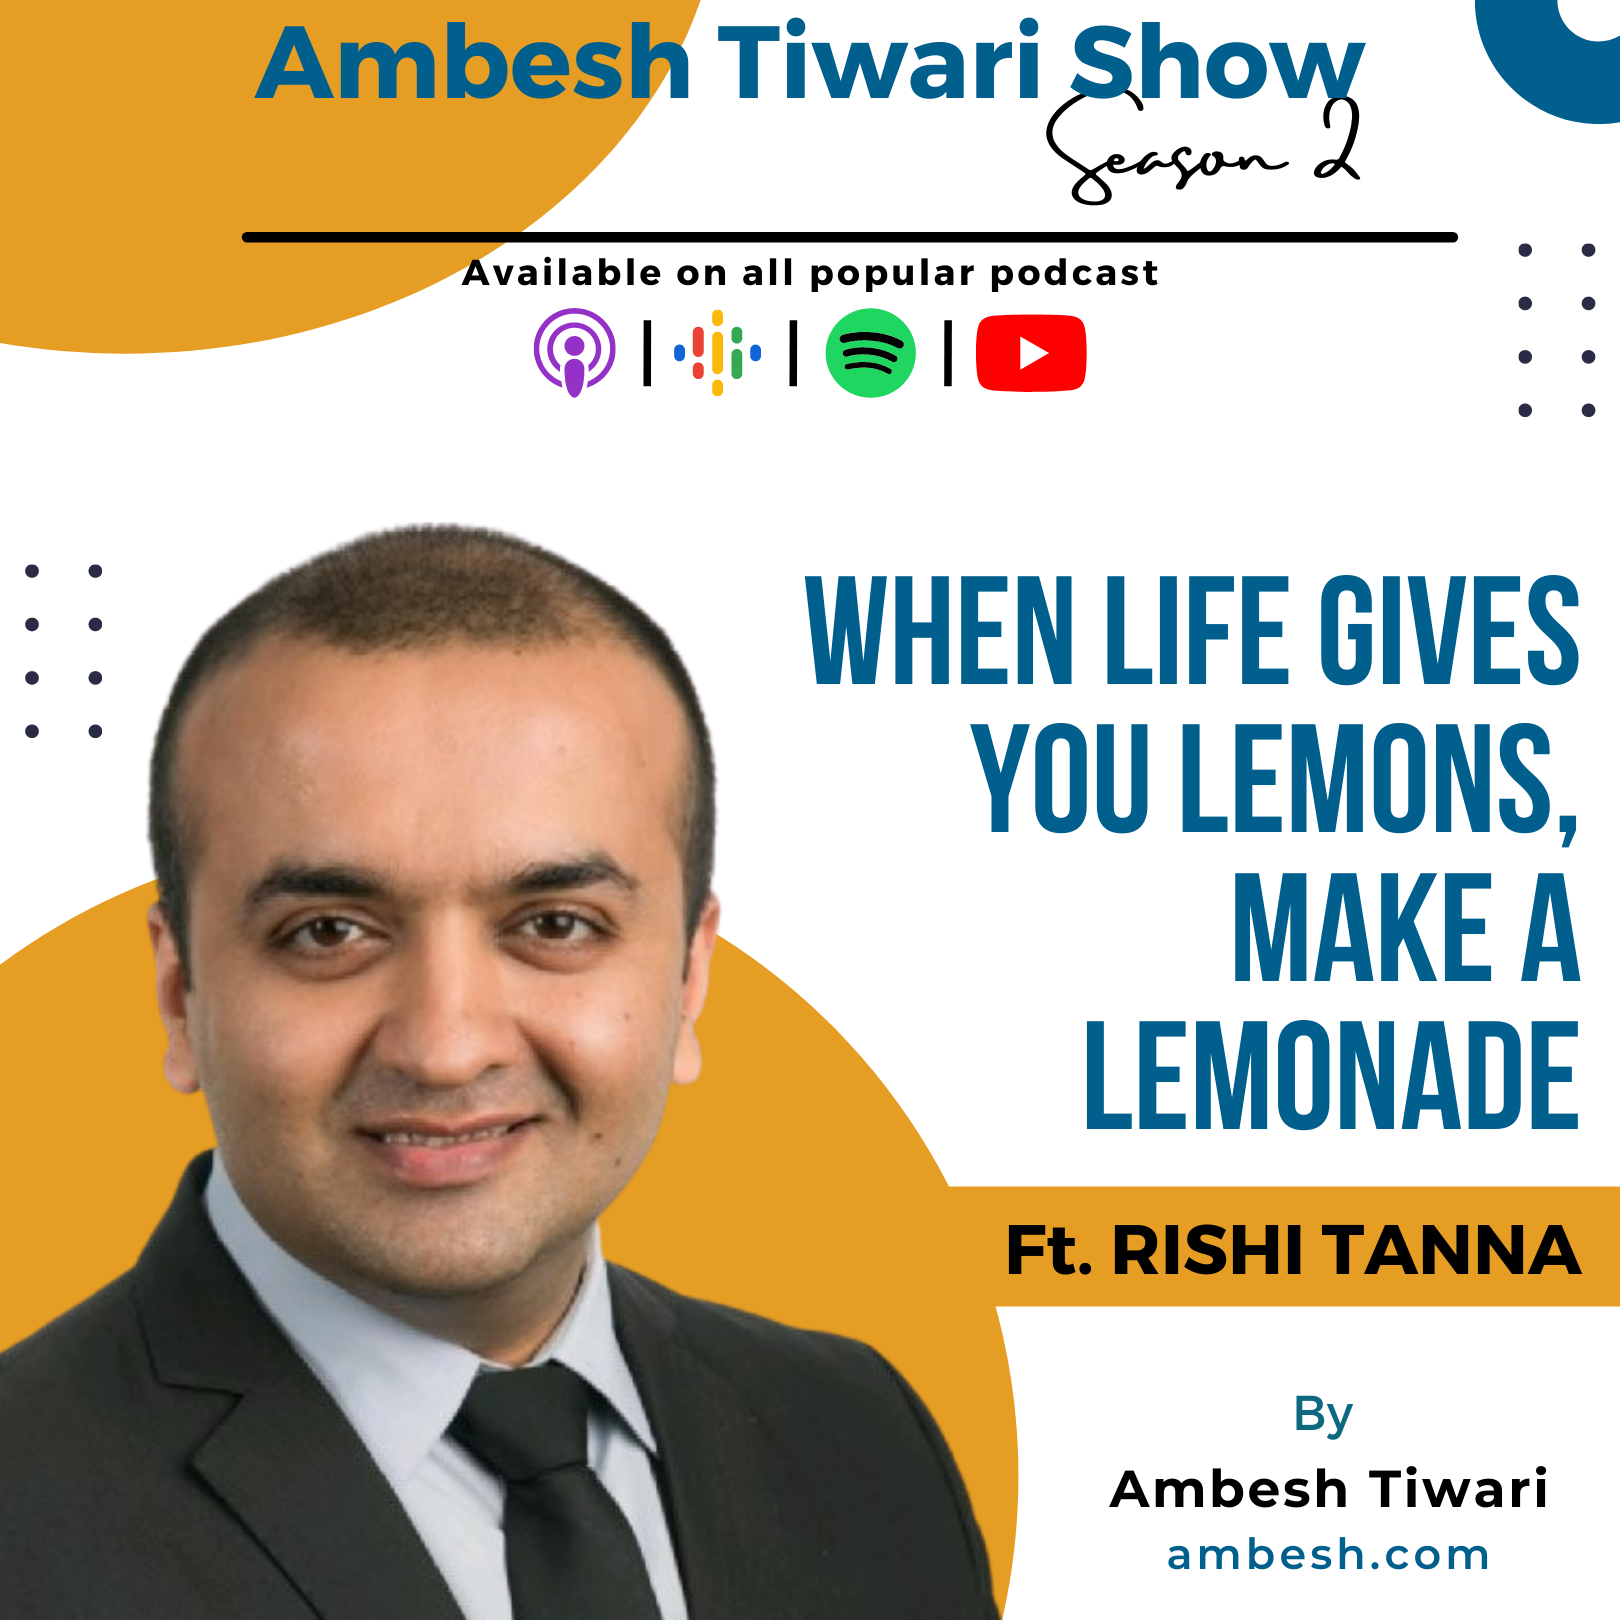 When life gives you lemons, make a lemonade ft. Rishi Tanna